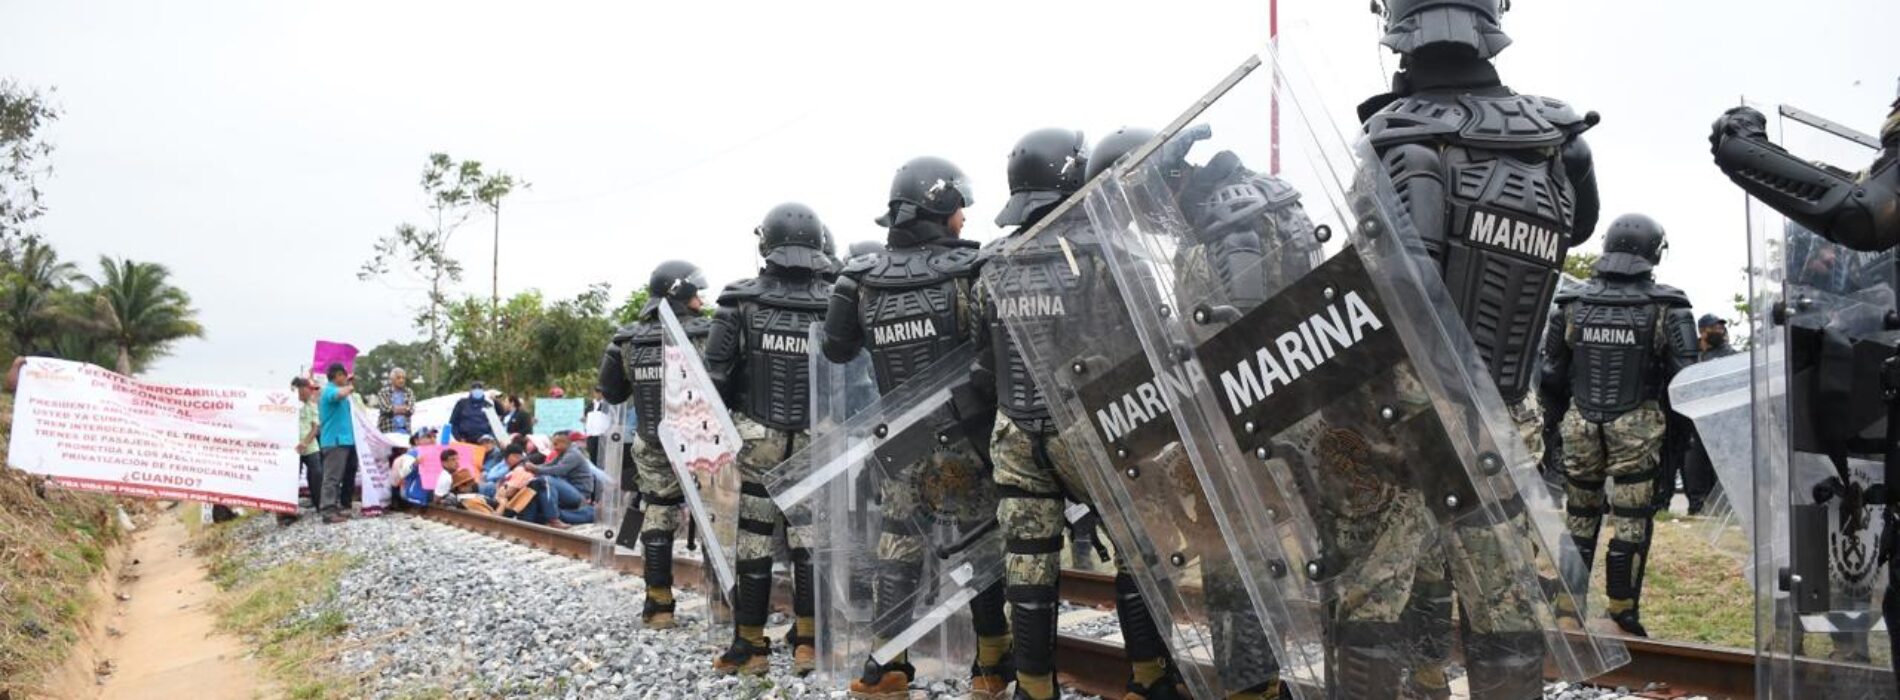 Marinos desalojan y detienen a ex ferrocarrileros que protestaban en Matías Romero